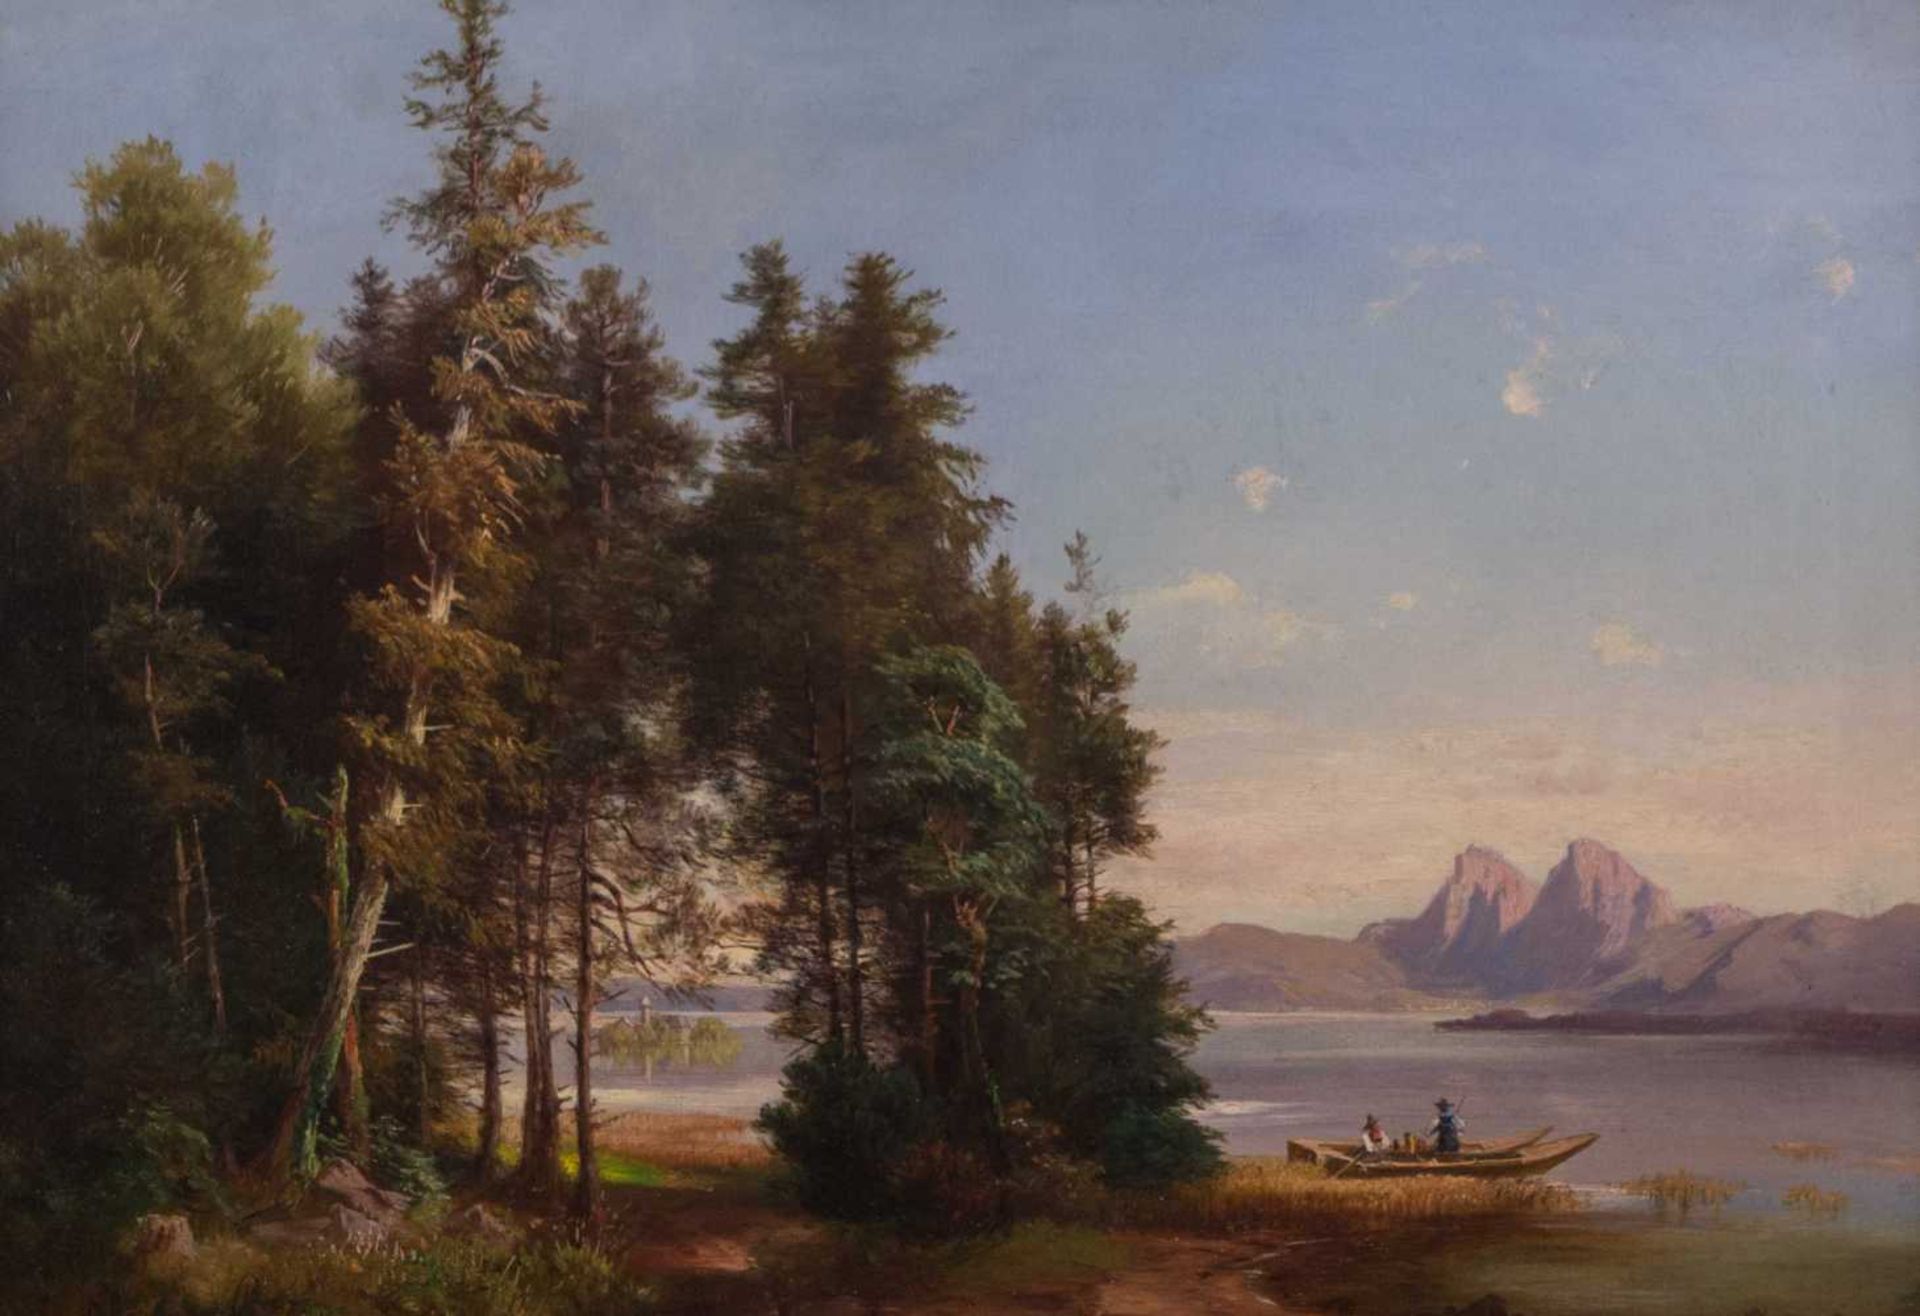 Anna PLOMMER (1836-1890) "Am Ufer eines Gebirgsees" Gemälde Öl/Leinwand(doubliert), 32 cm x 48 cm,